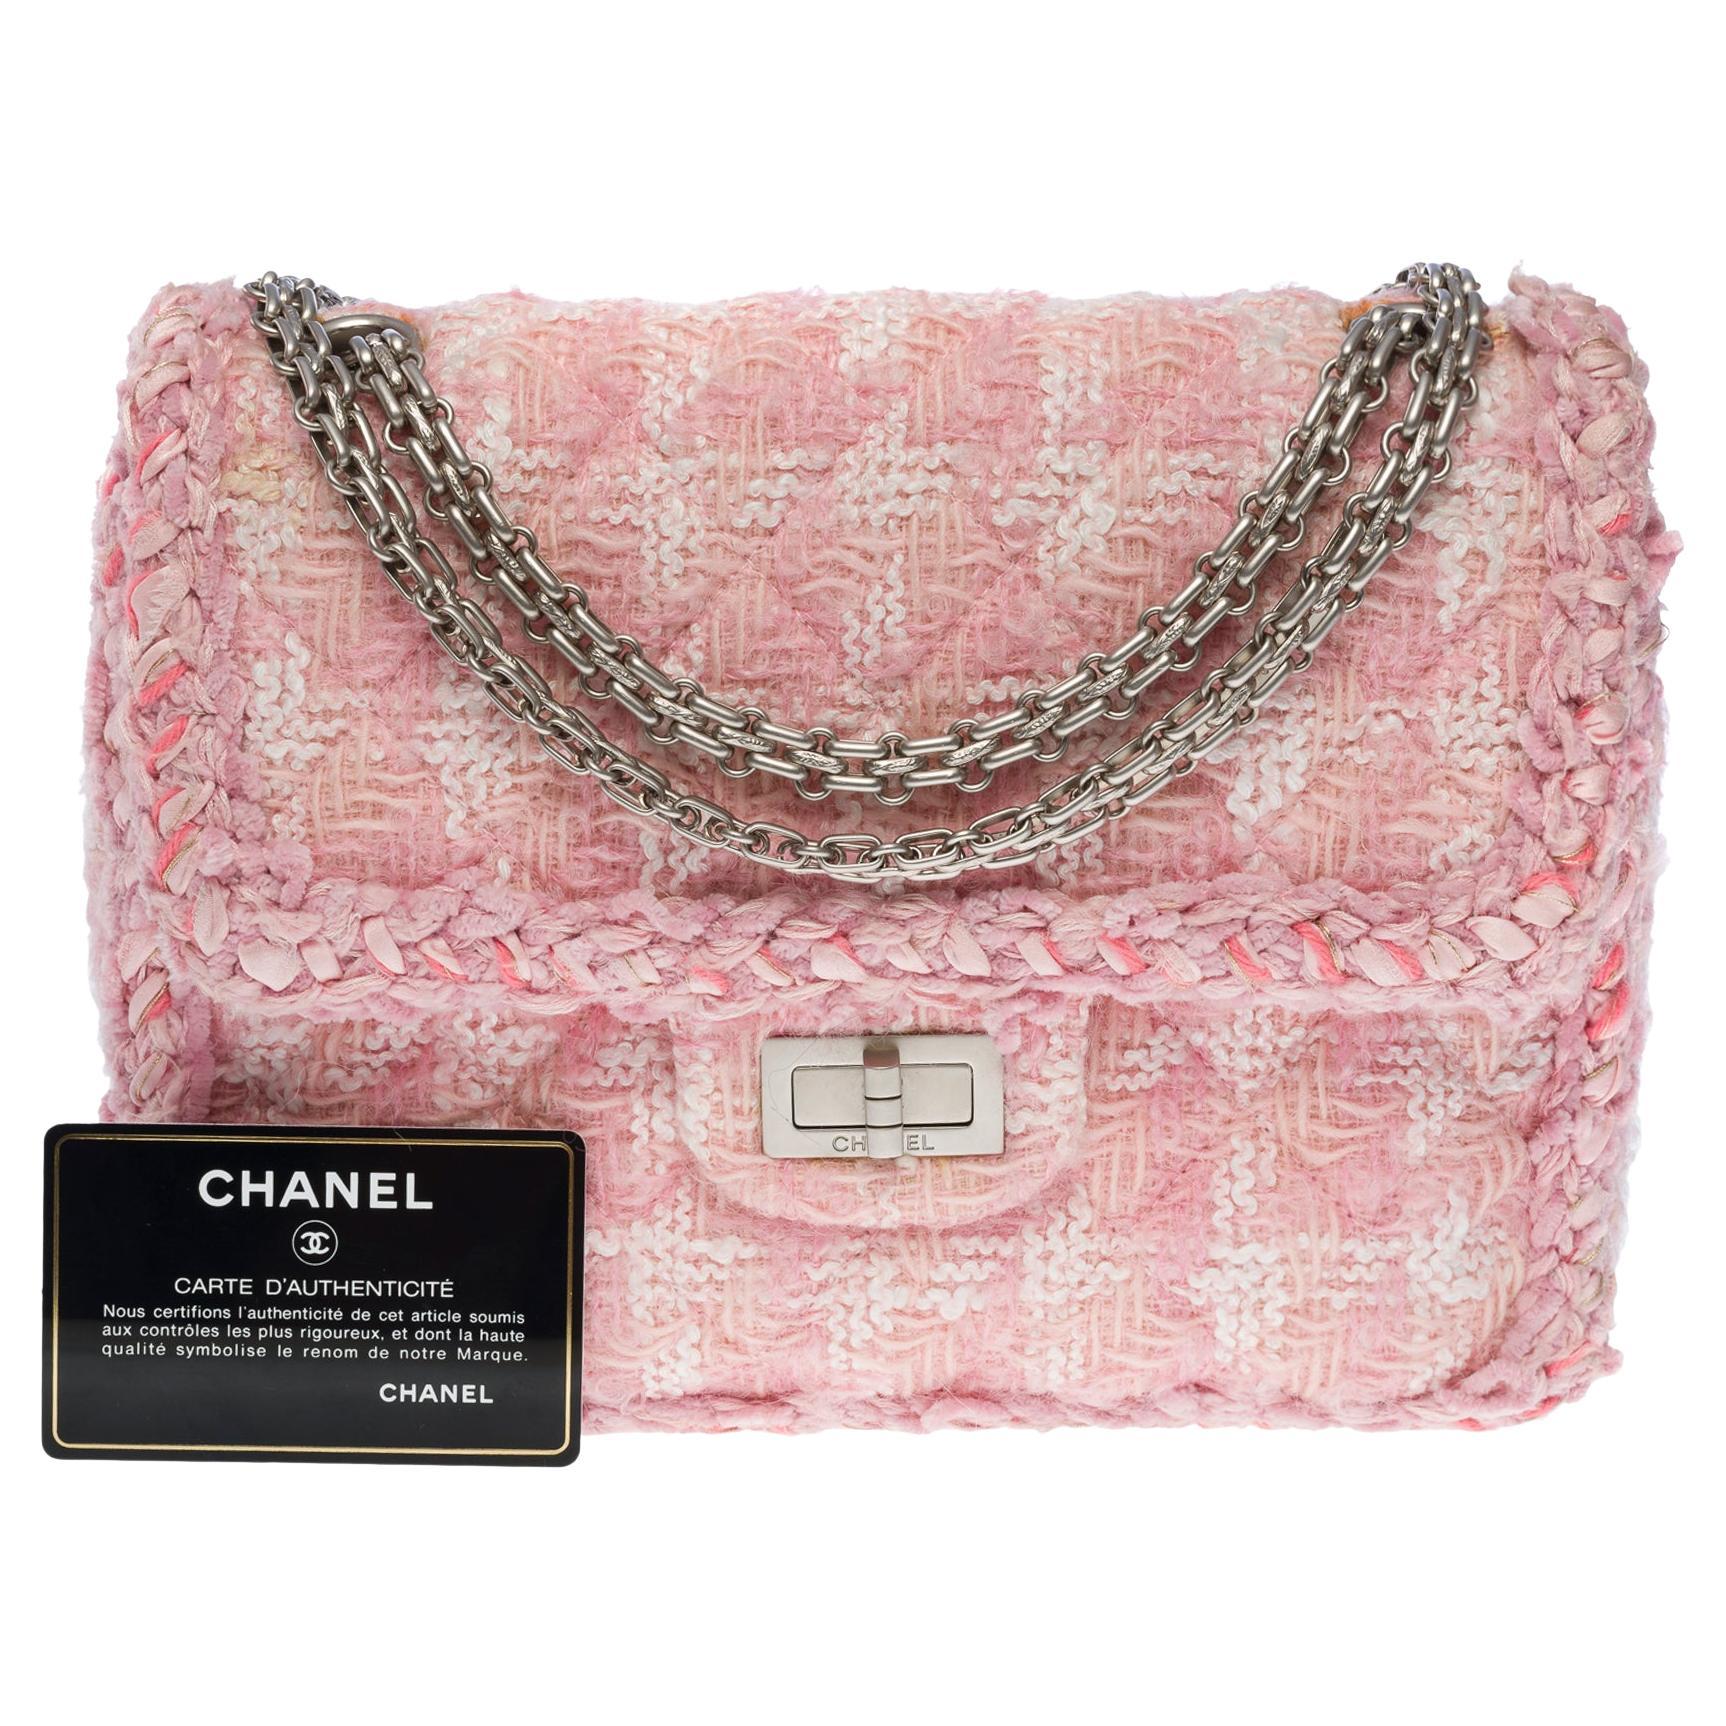 Exquisite Chanel 2.55 shoulder bag in Pink Tweed, Matt silver